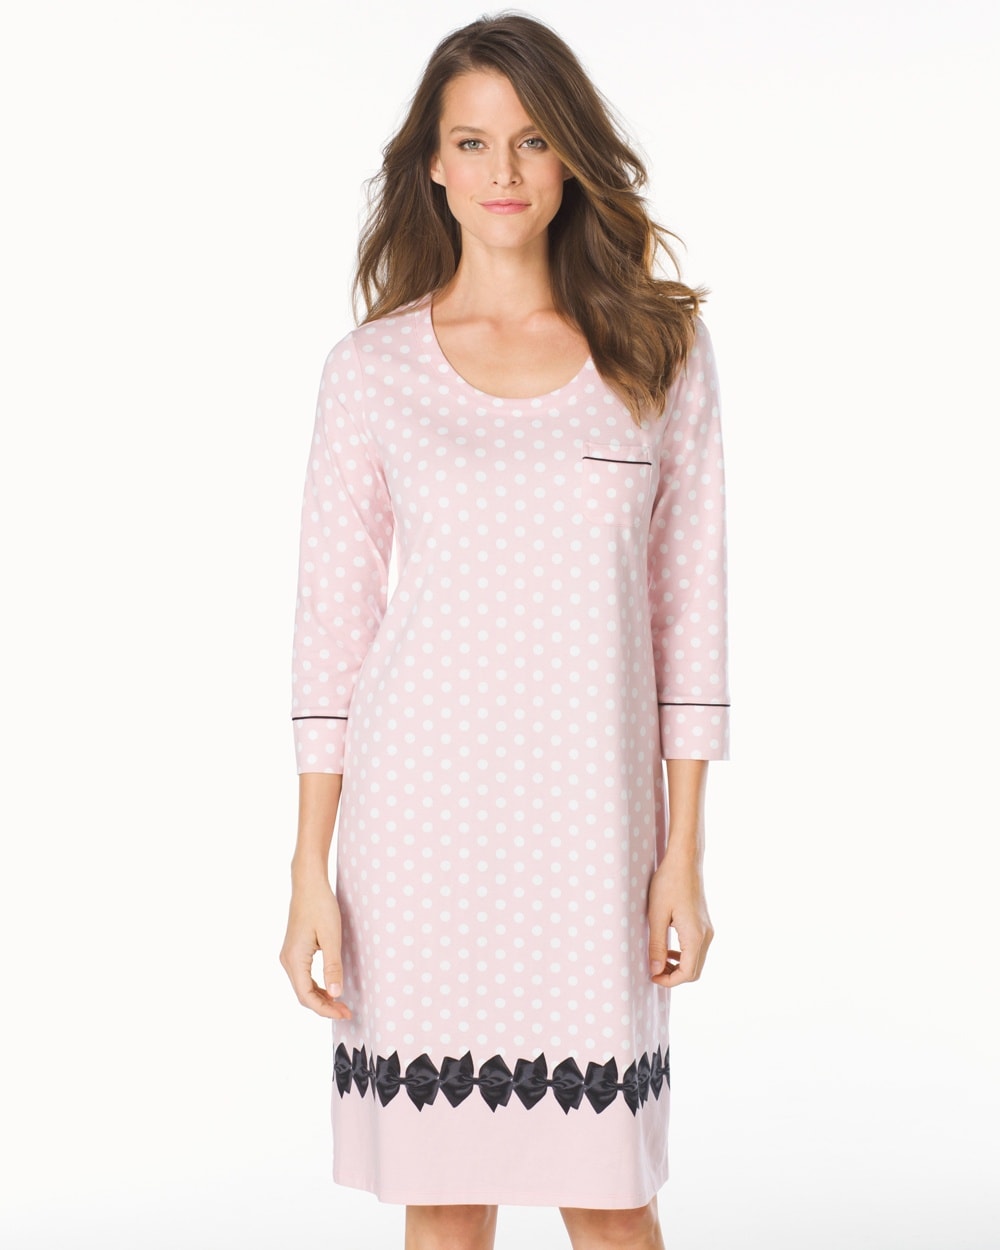 Embraceable 3/4 Sleeve Sleepshirt Big Dot Pink Bows Border